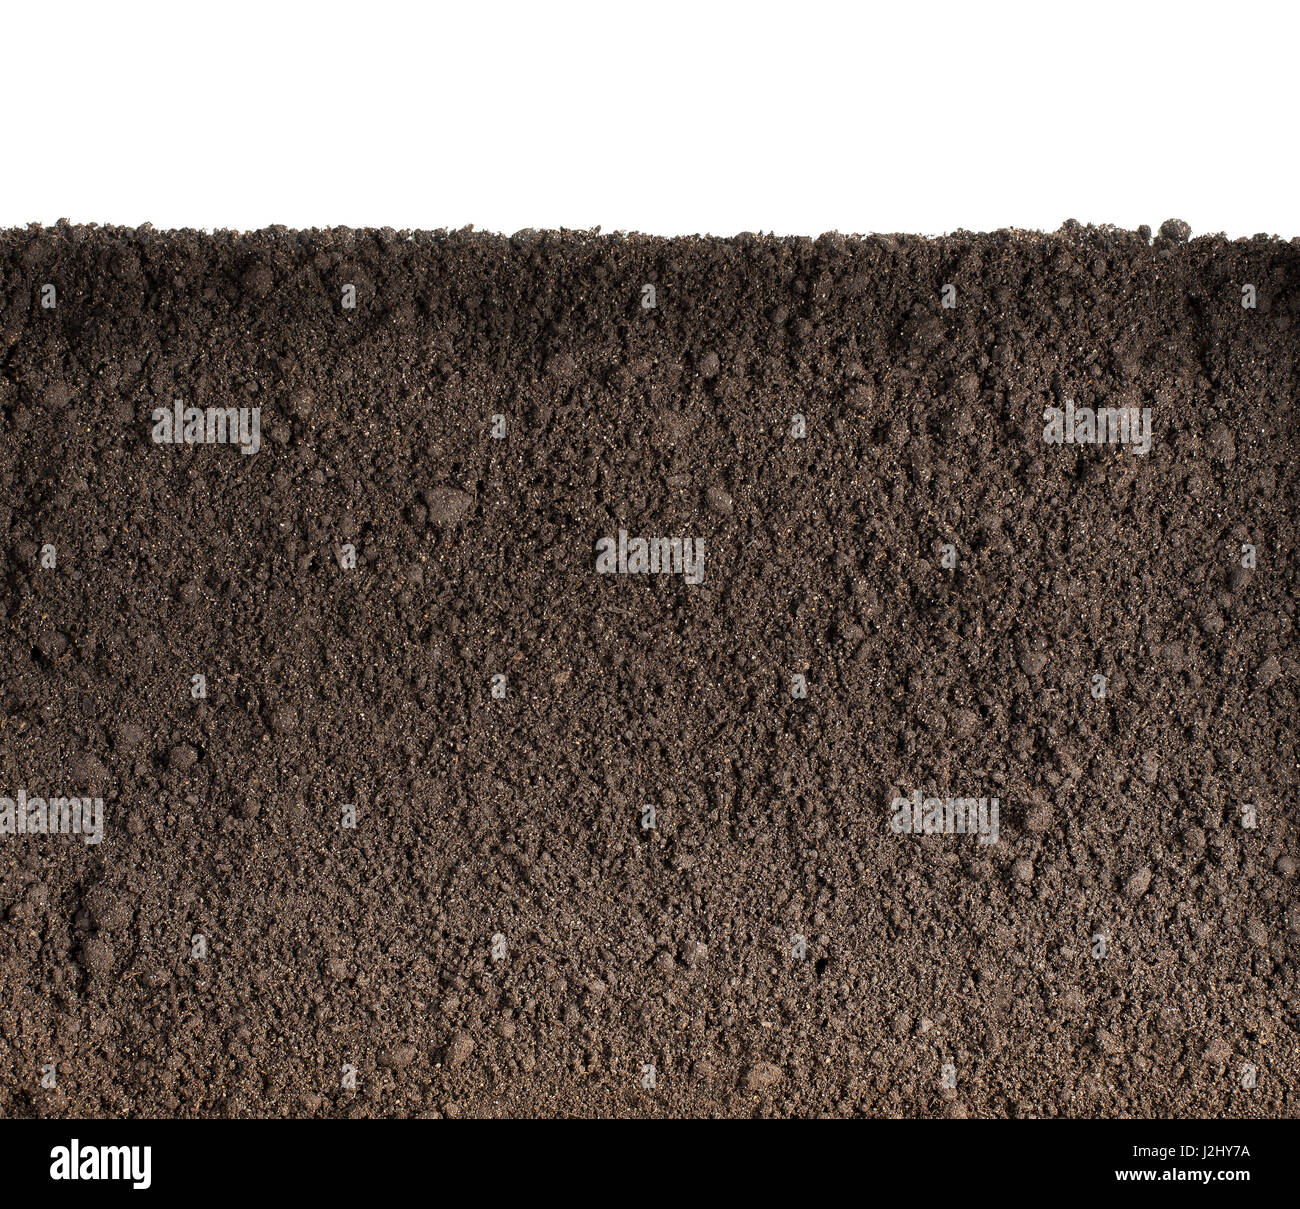 La textura del suelo o suciedad Foto de stock